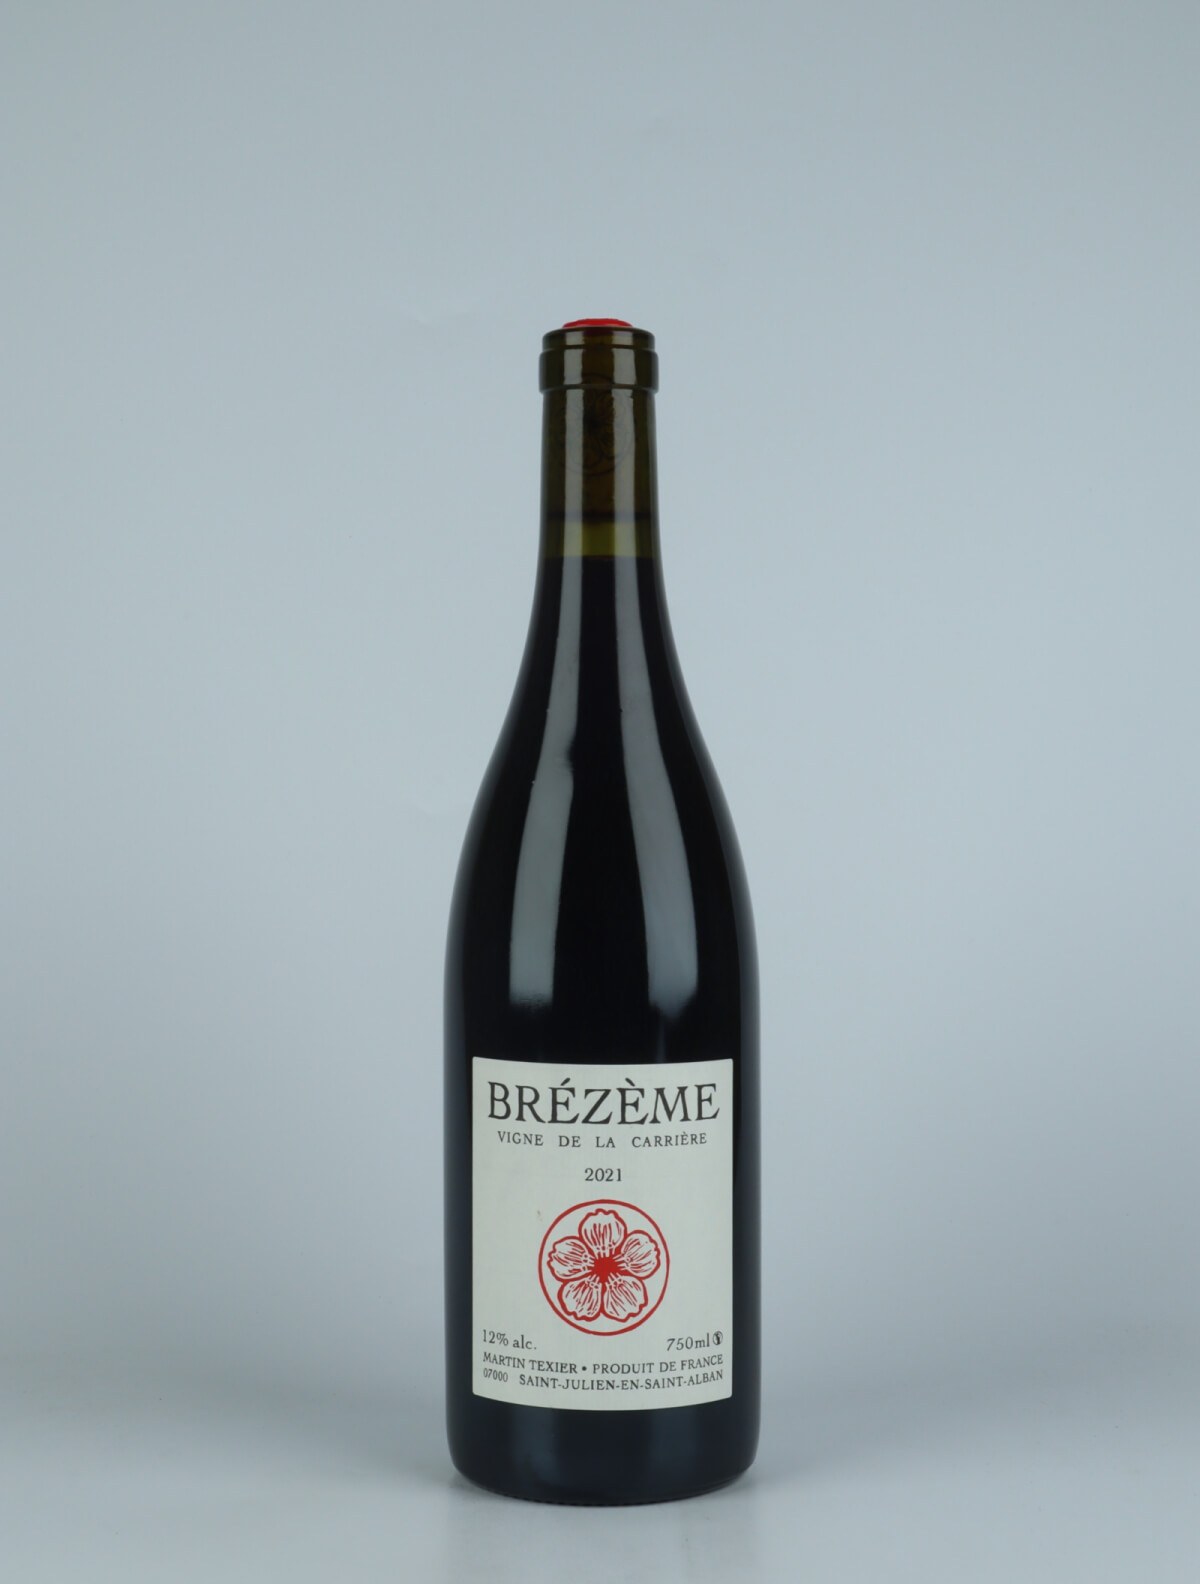 A bottle 2021 Brézème - Vigne de la Carrière Red wine from Martin Texier, Rhône in France